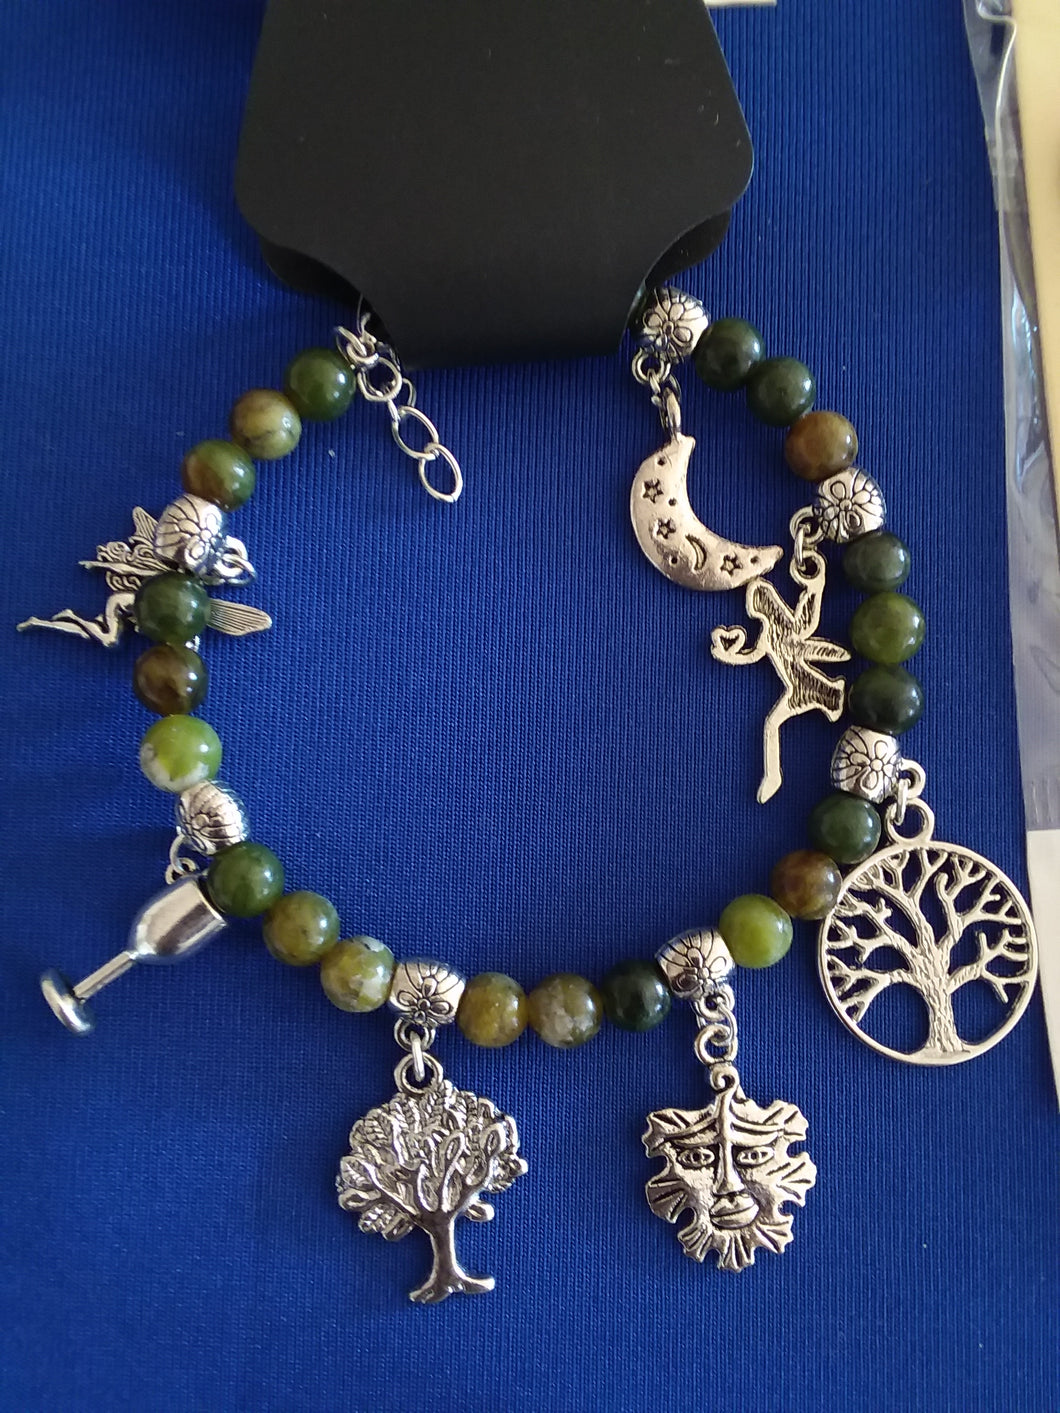 AVBeads Gemstone Beaded Charm Bracelet Wicca and Pagan Jewelry